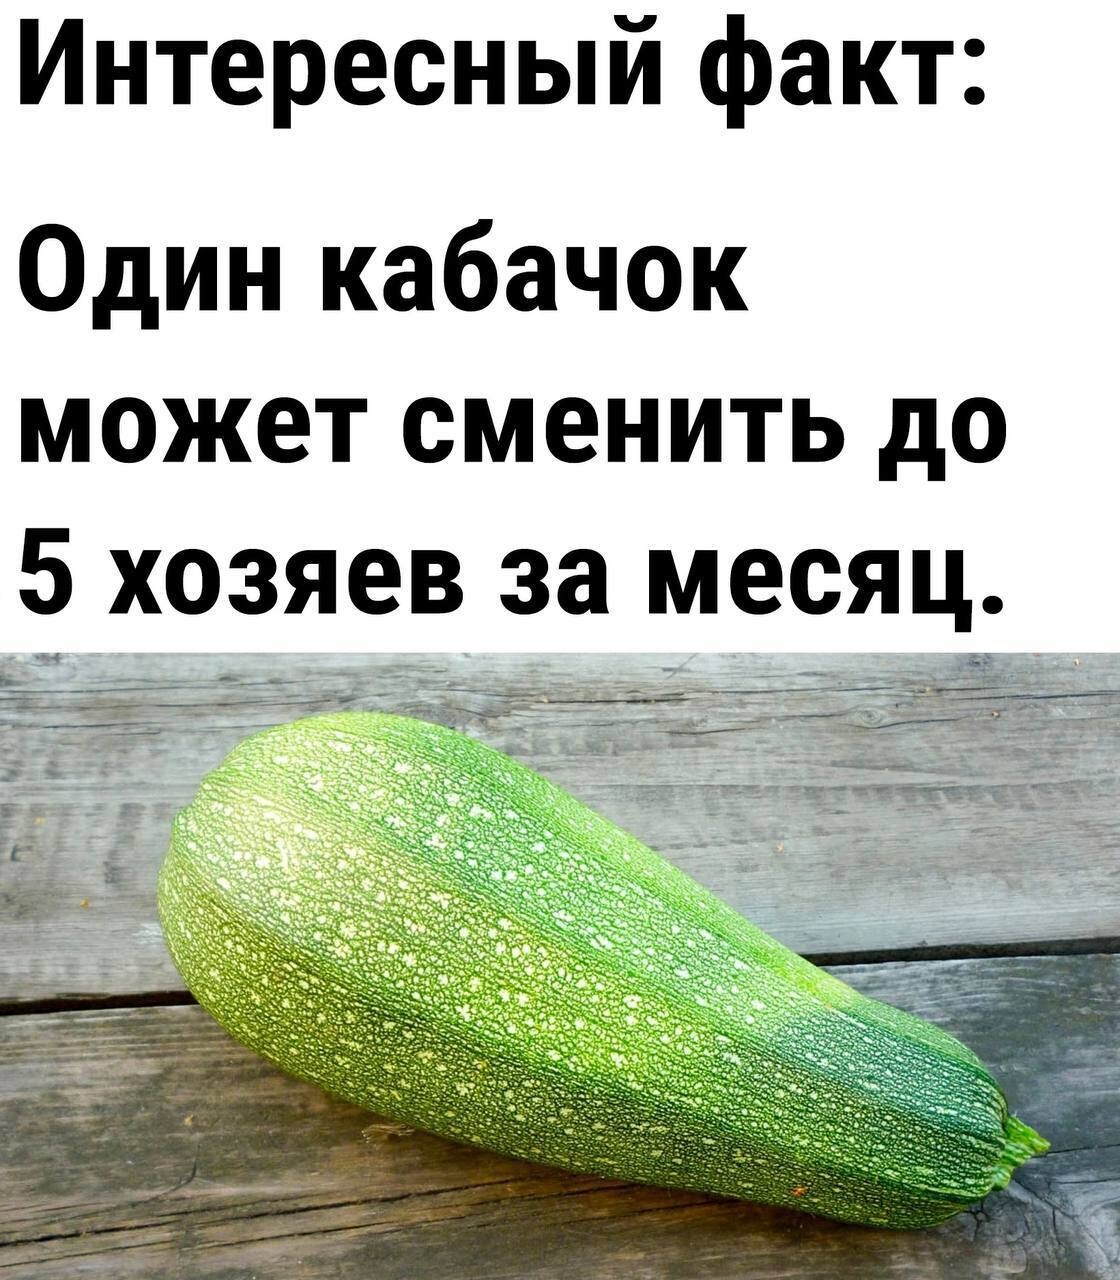 Свежий сборник прикольных мемов (16 фото)